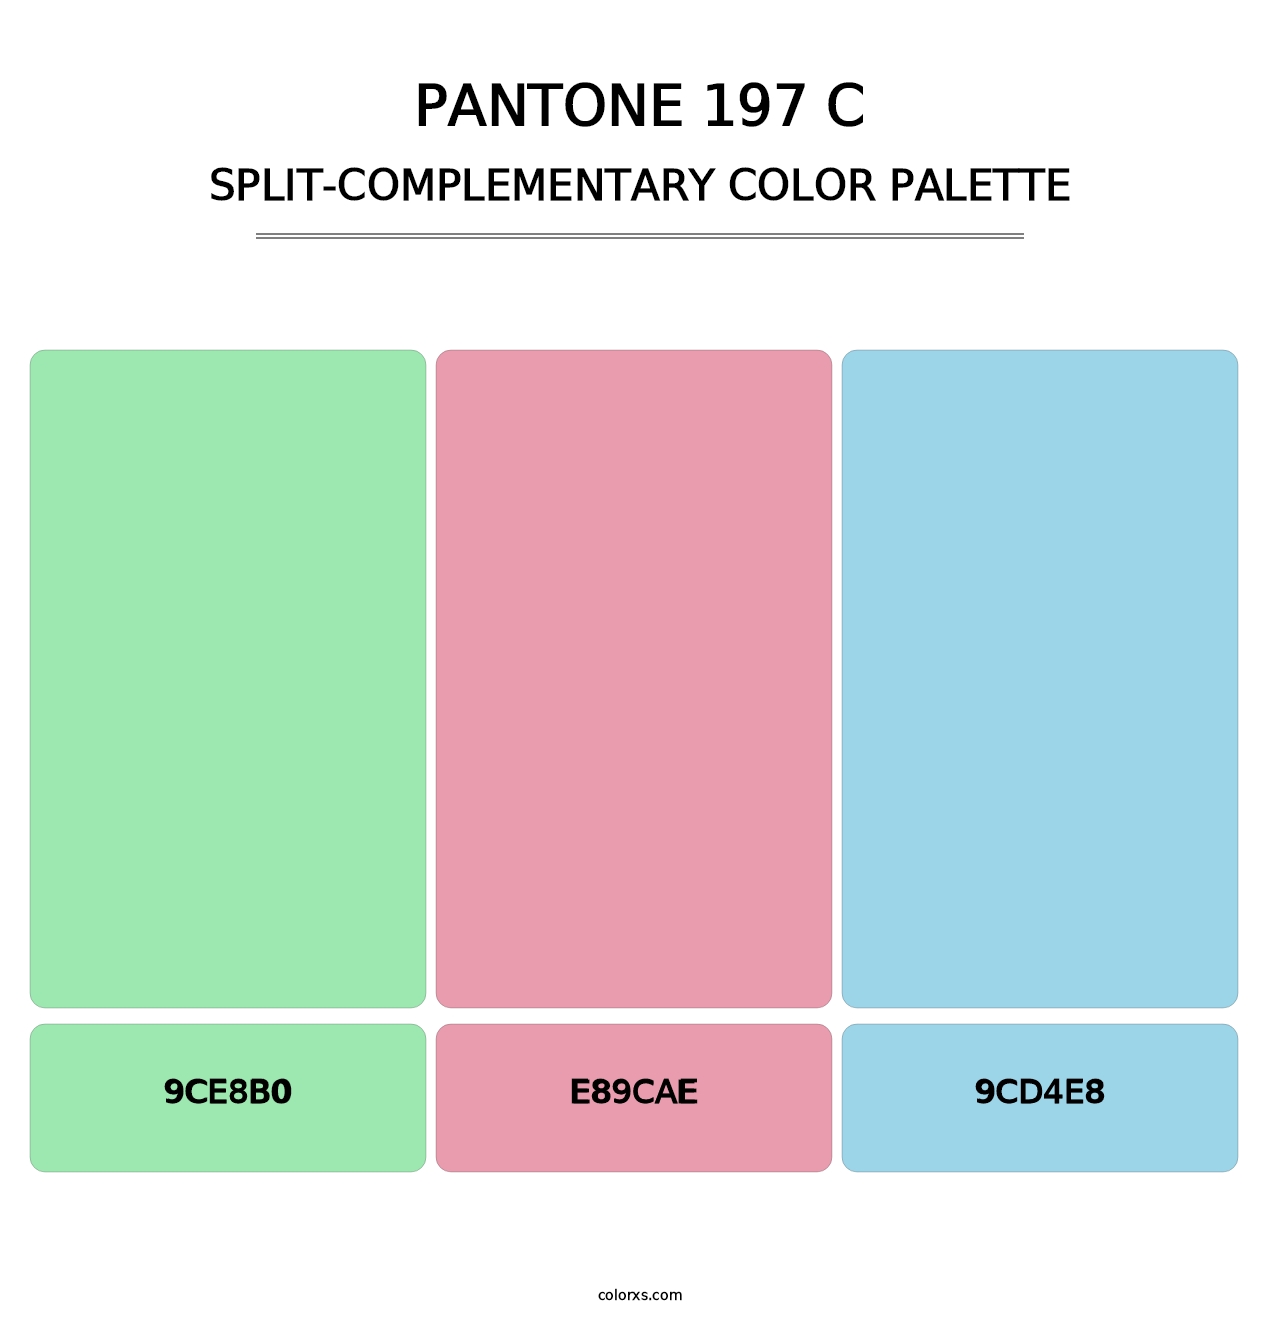 PANTONE 197 C - Split-Complementary Color Palette